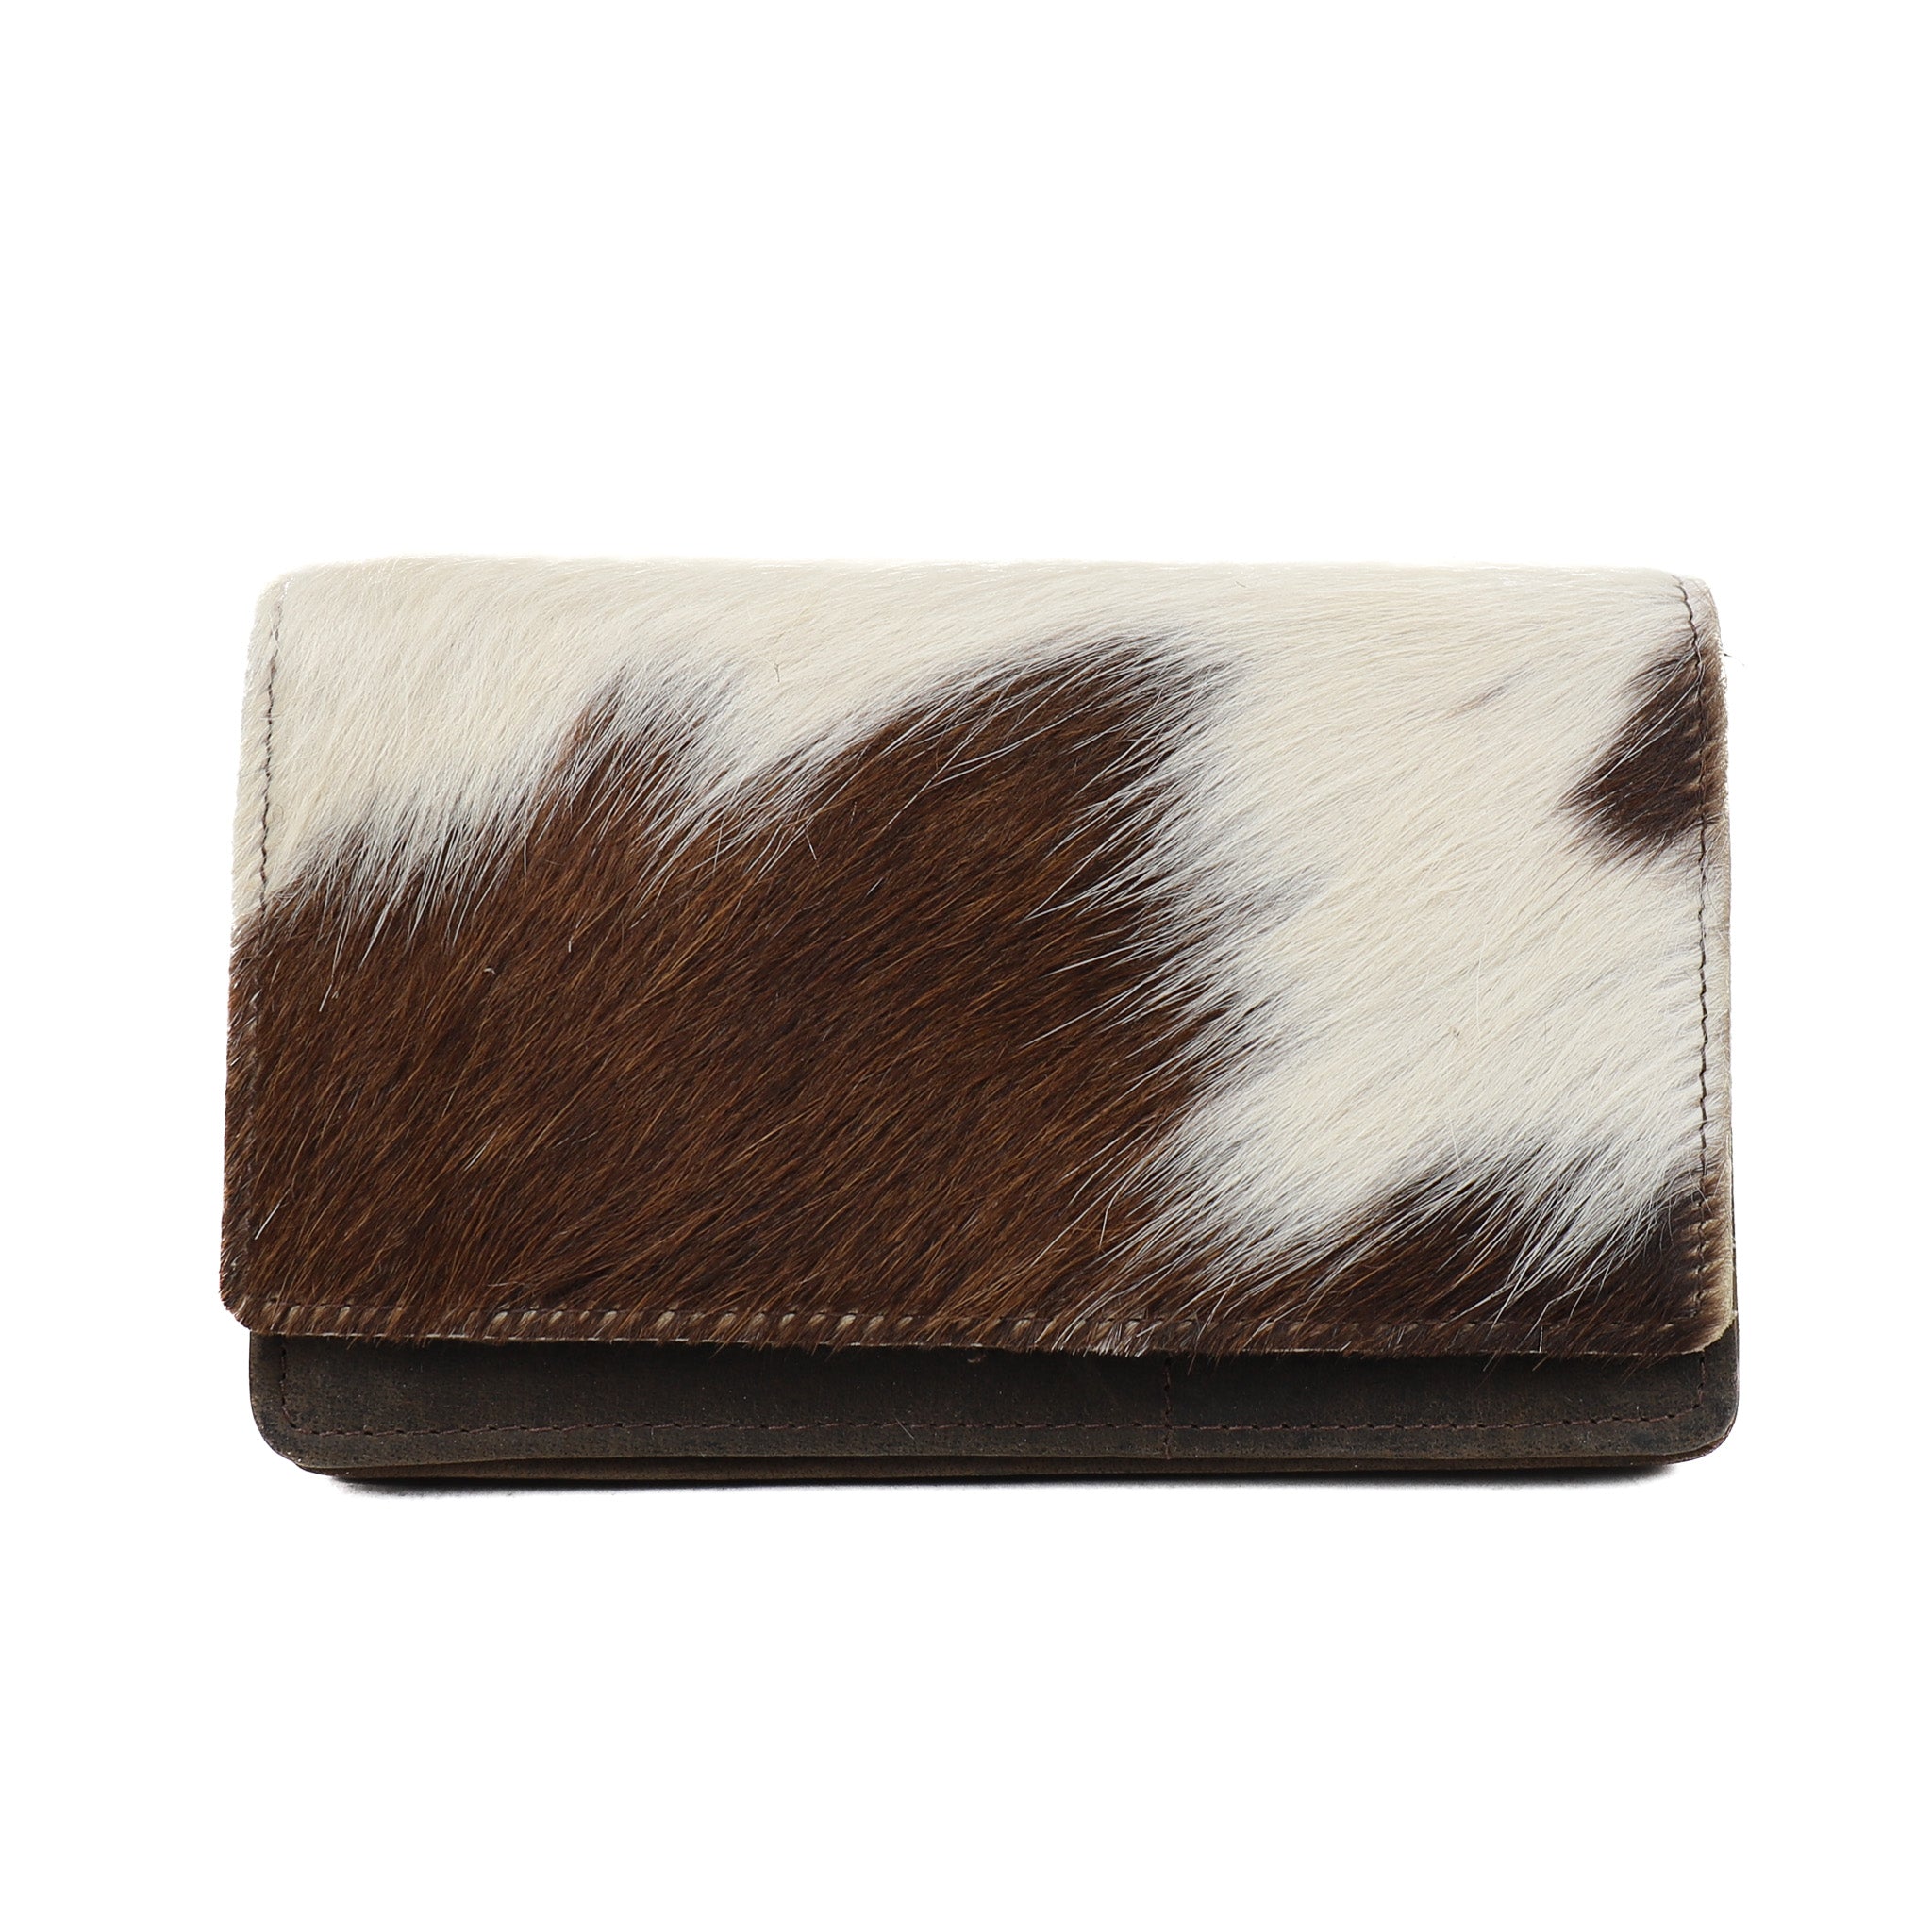 Wrap wallet 'Emma' fur brown